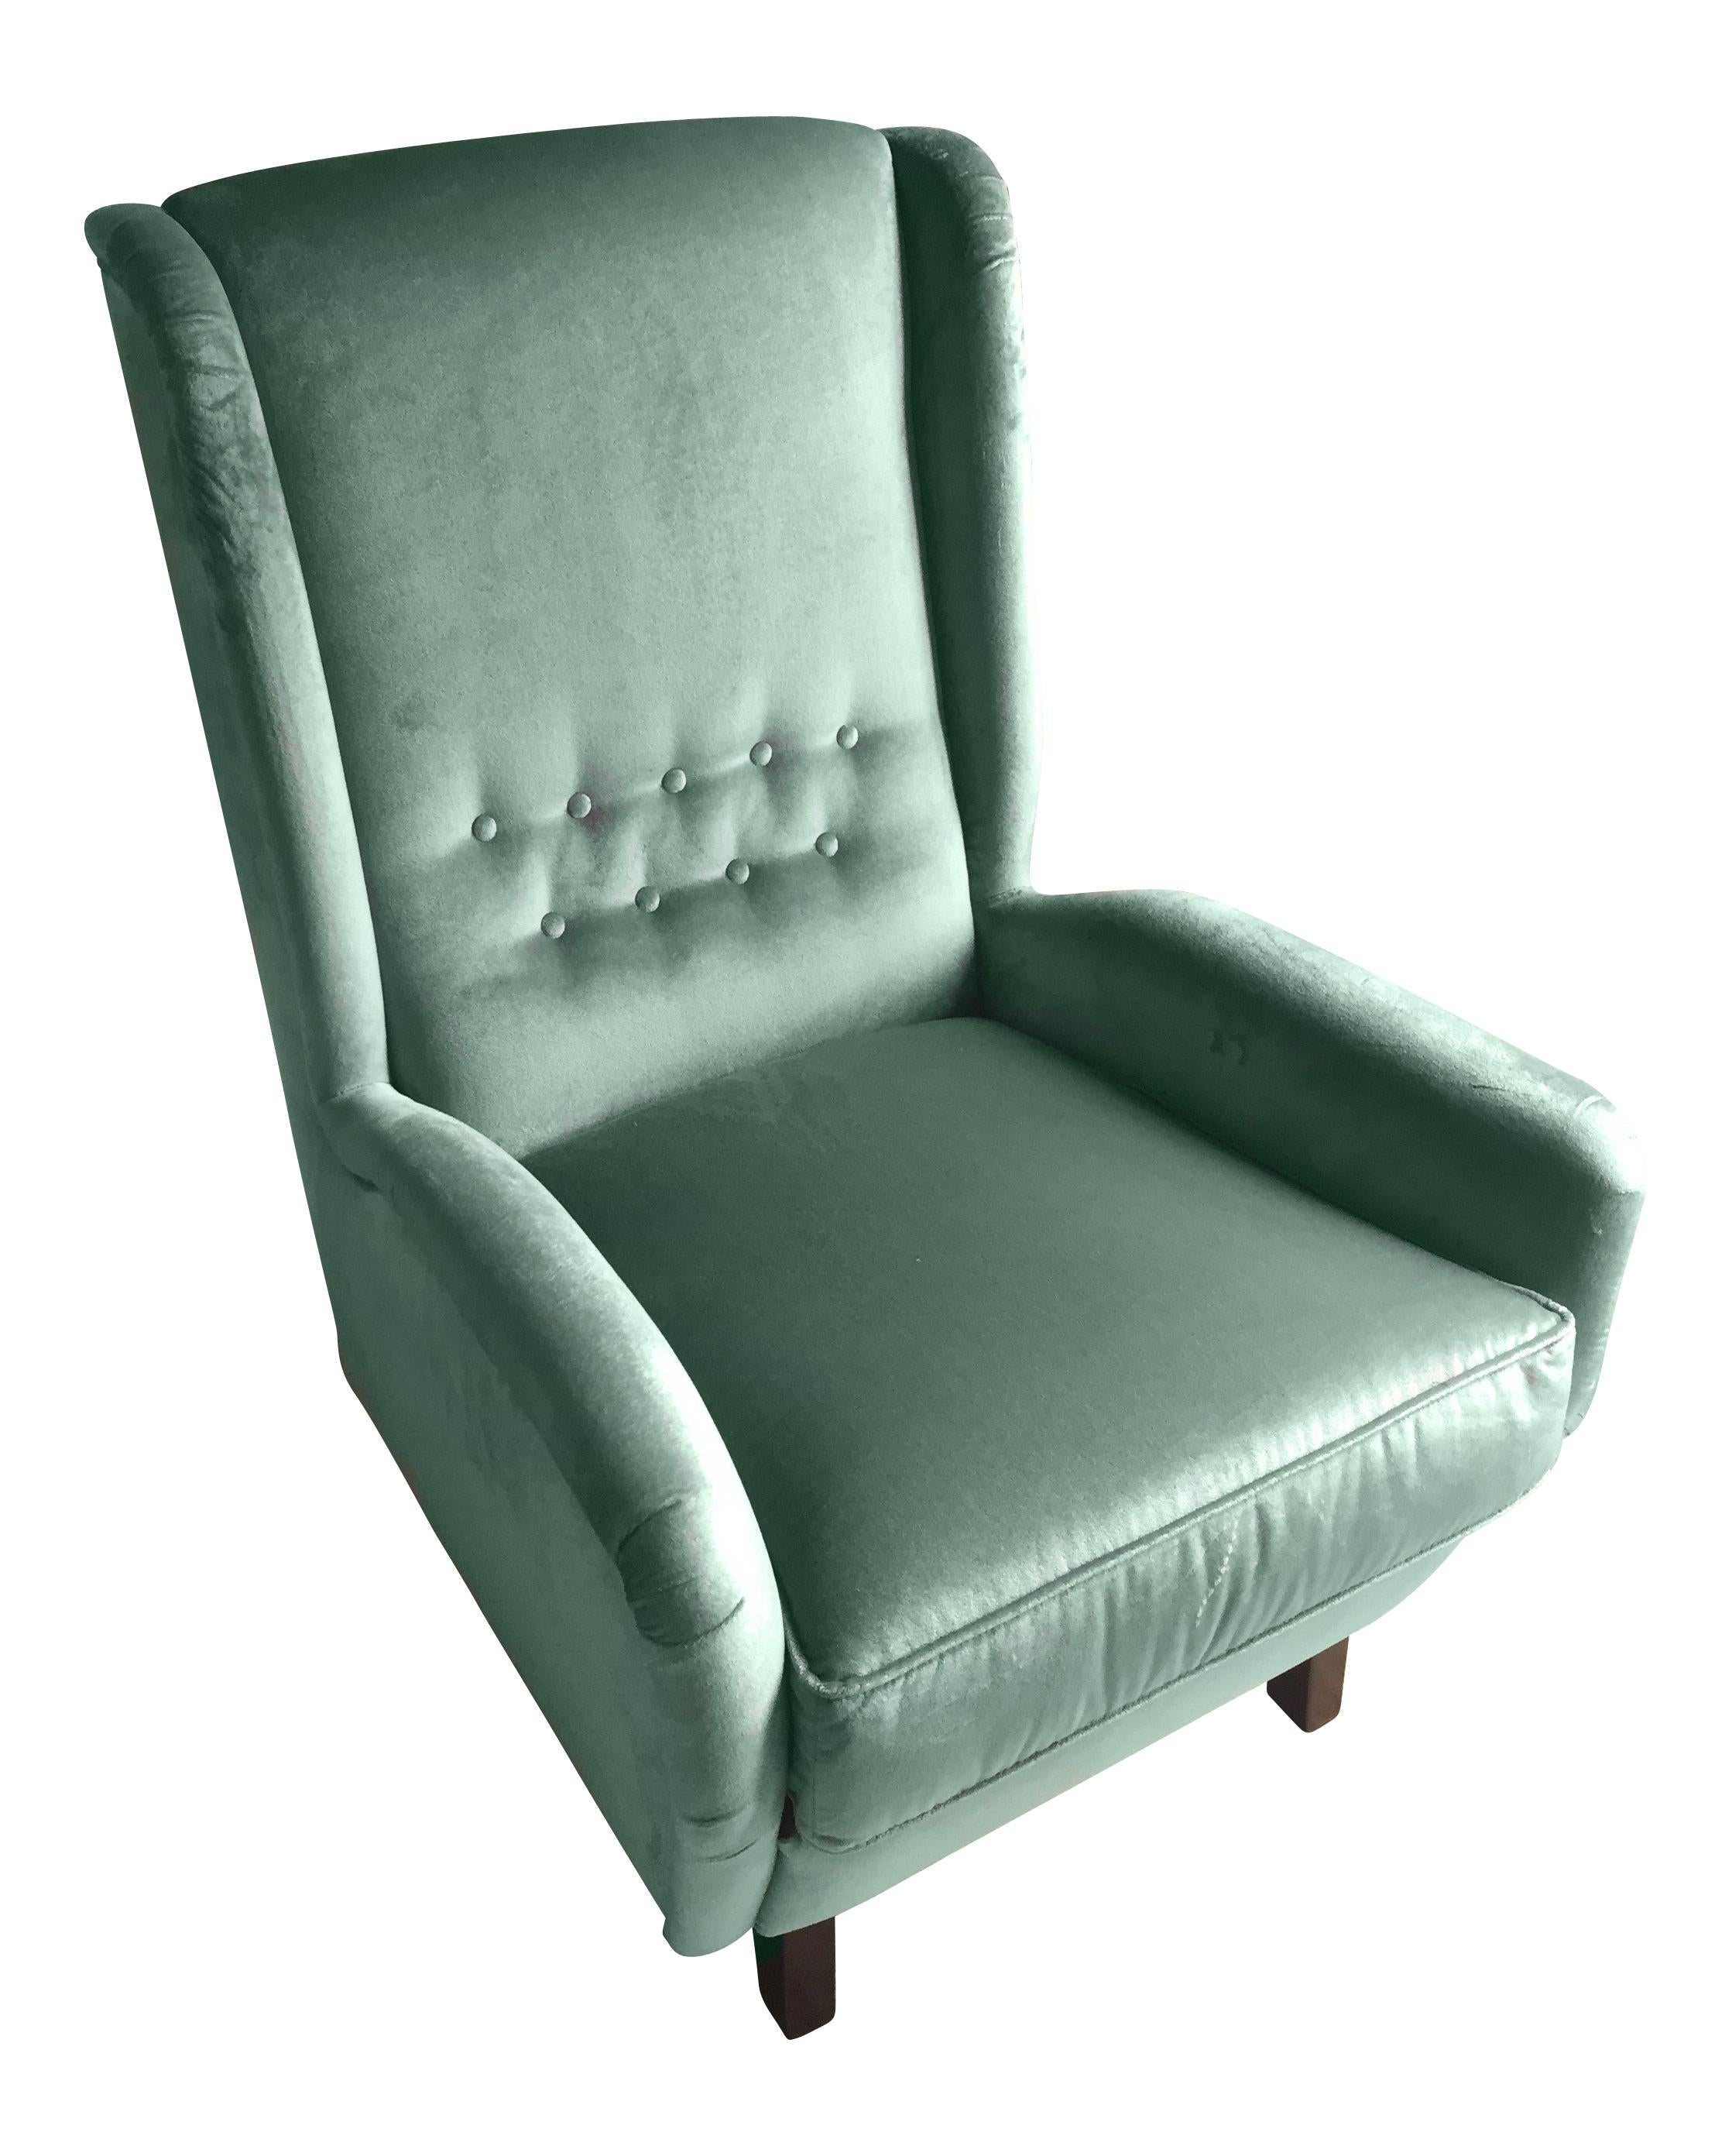 Contemporary Italian Gio Ponti Style Teal Aqua Green Velvet High Back Armchair 1